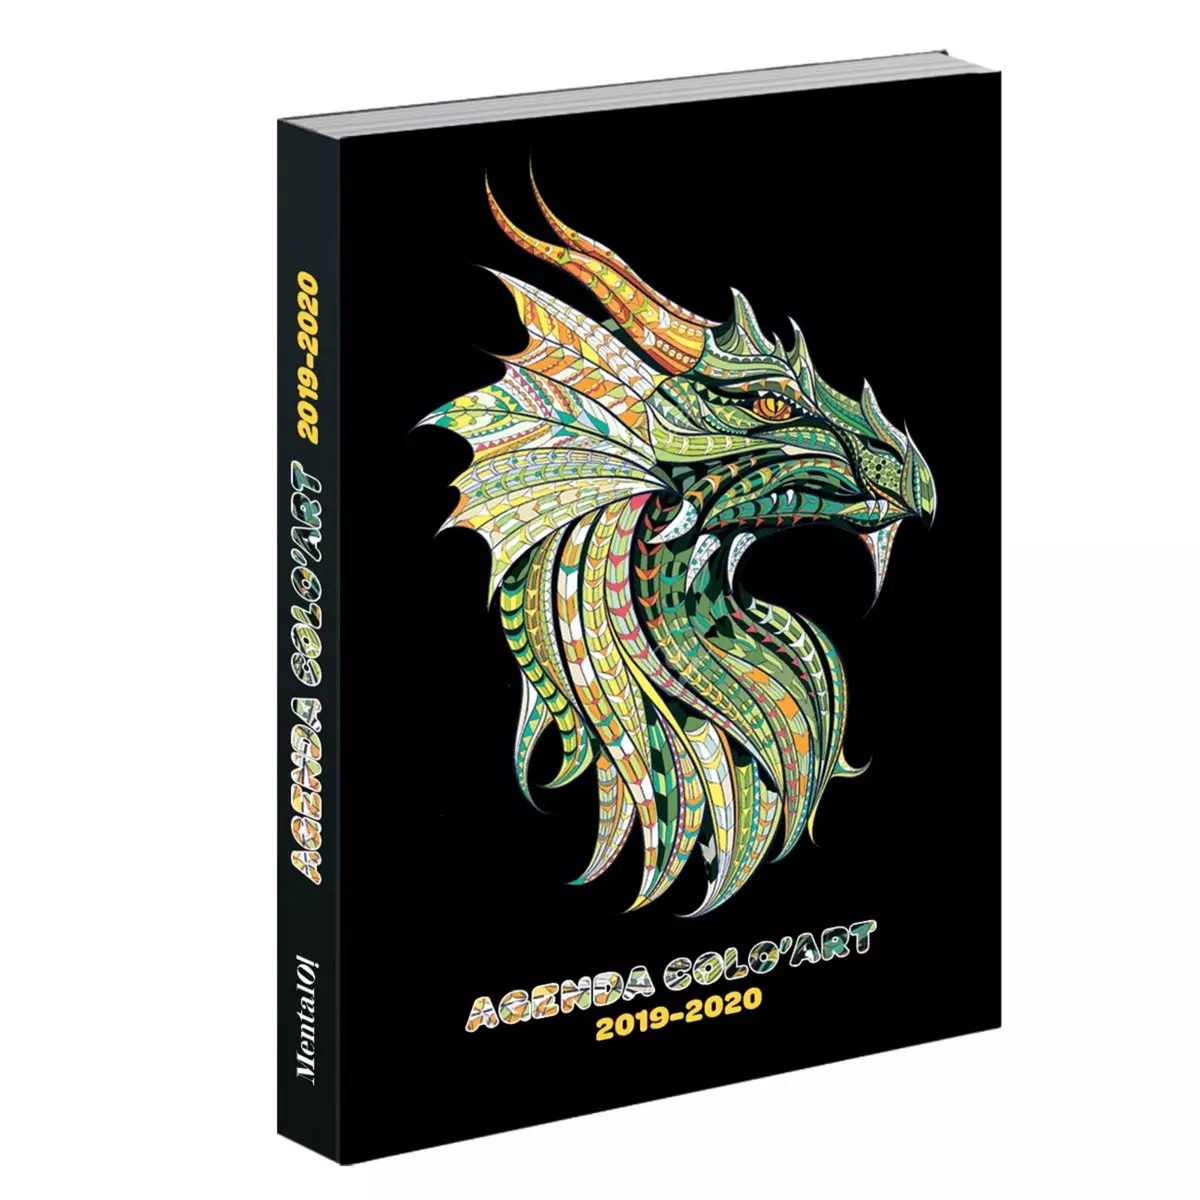  Agenda scolaire jounalier garçon 320 pages 12x17cm - couverture à rabats - Colo Art dragon sur fond noir 2019-2020